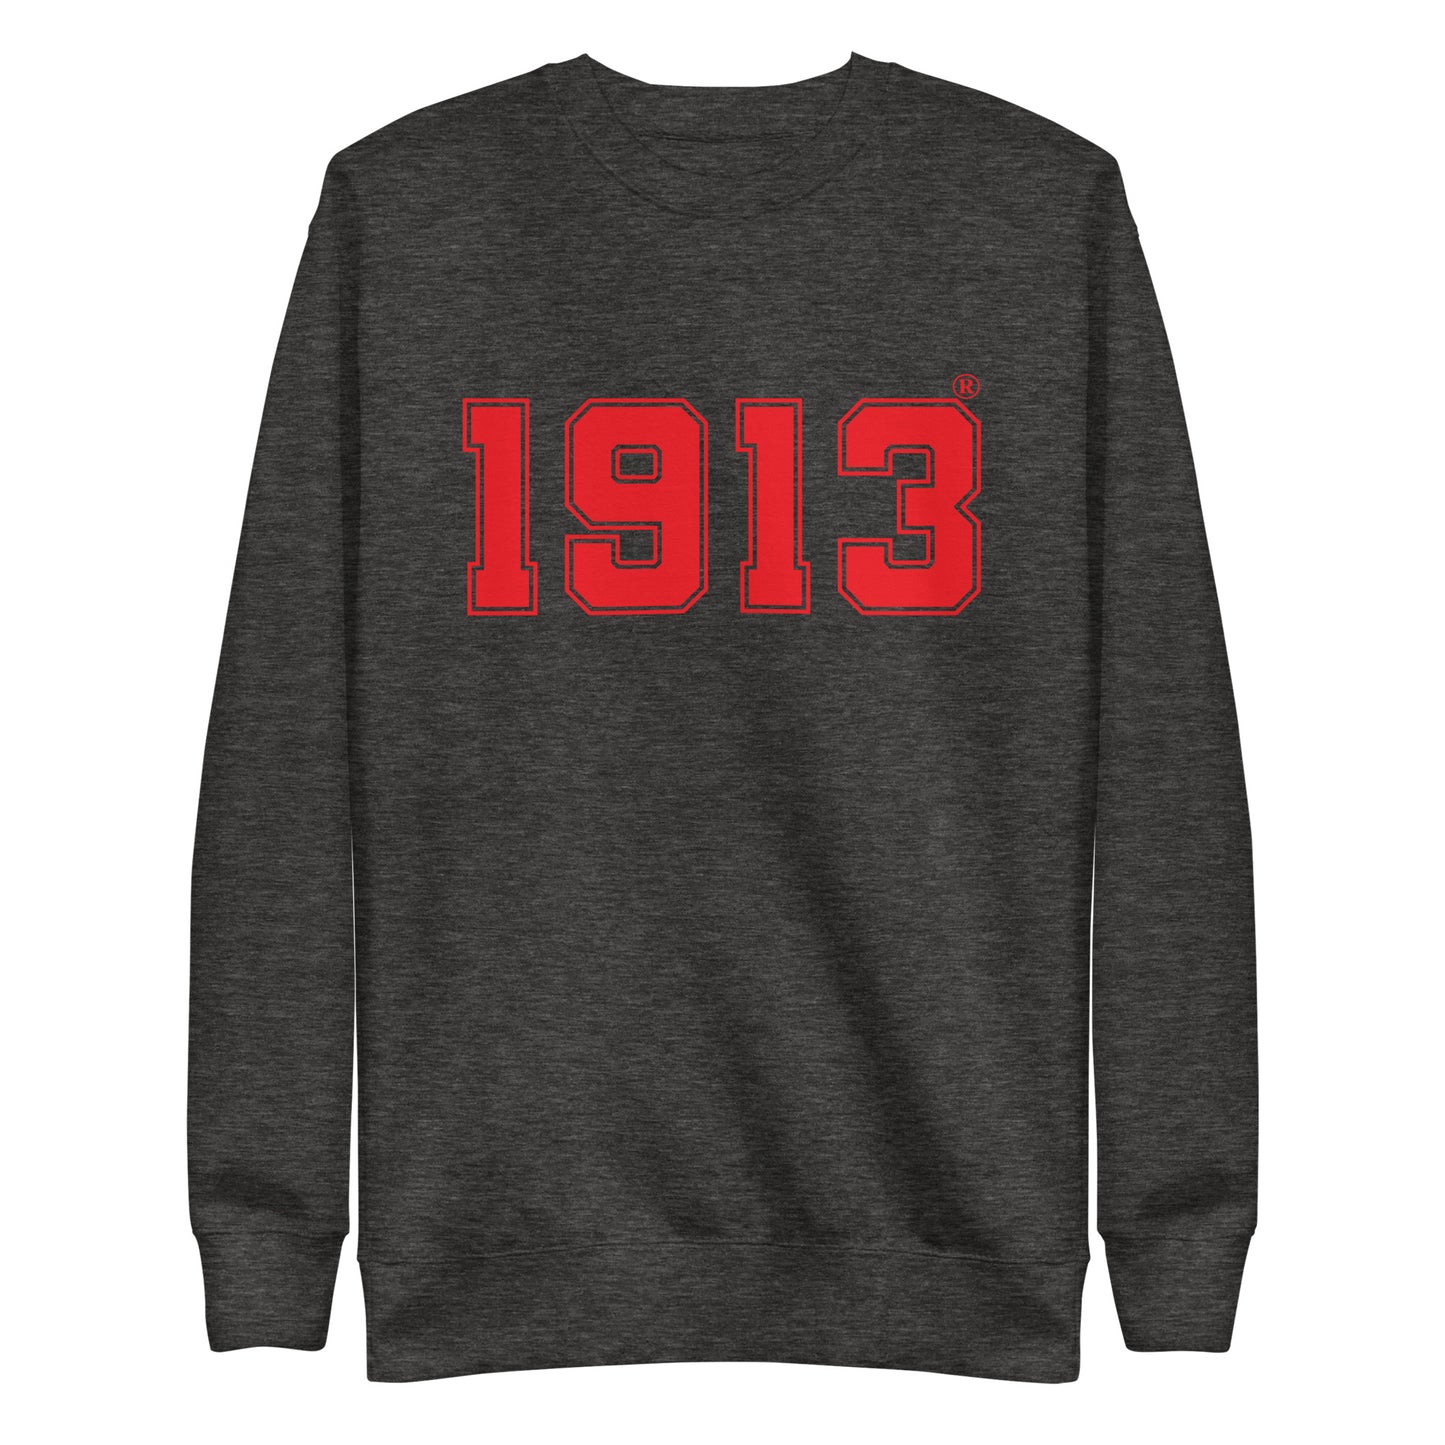 Delta 1913 Sweatshirt